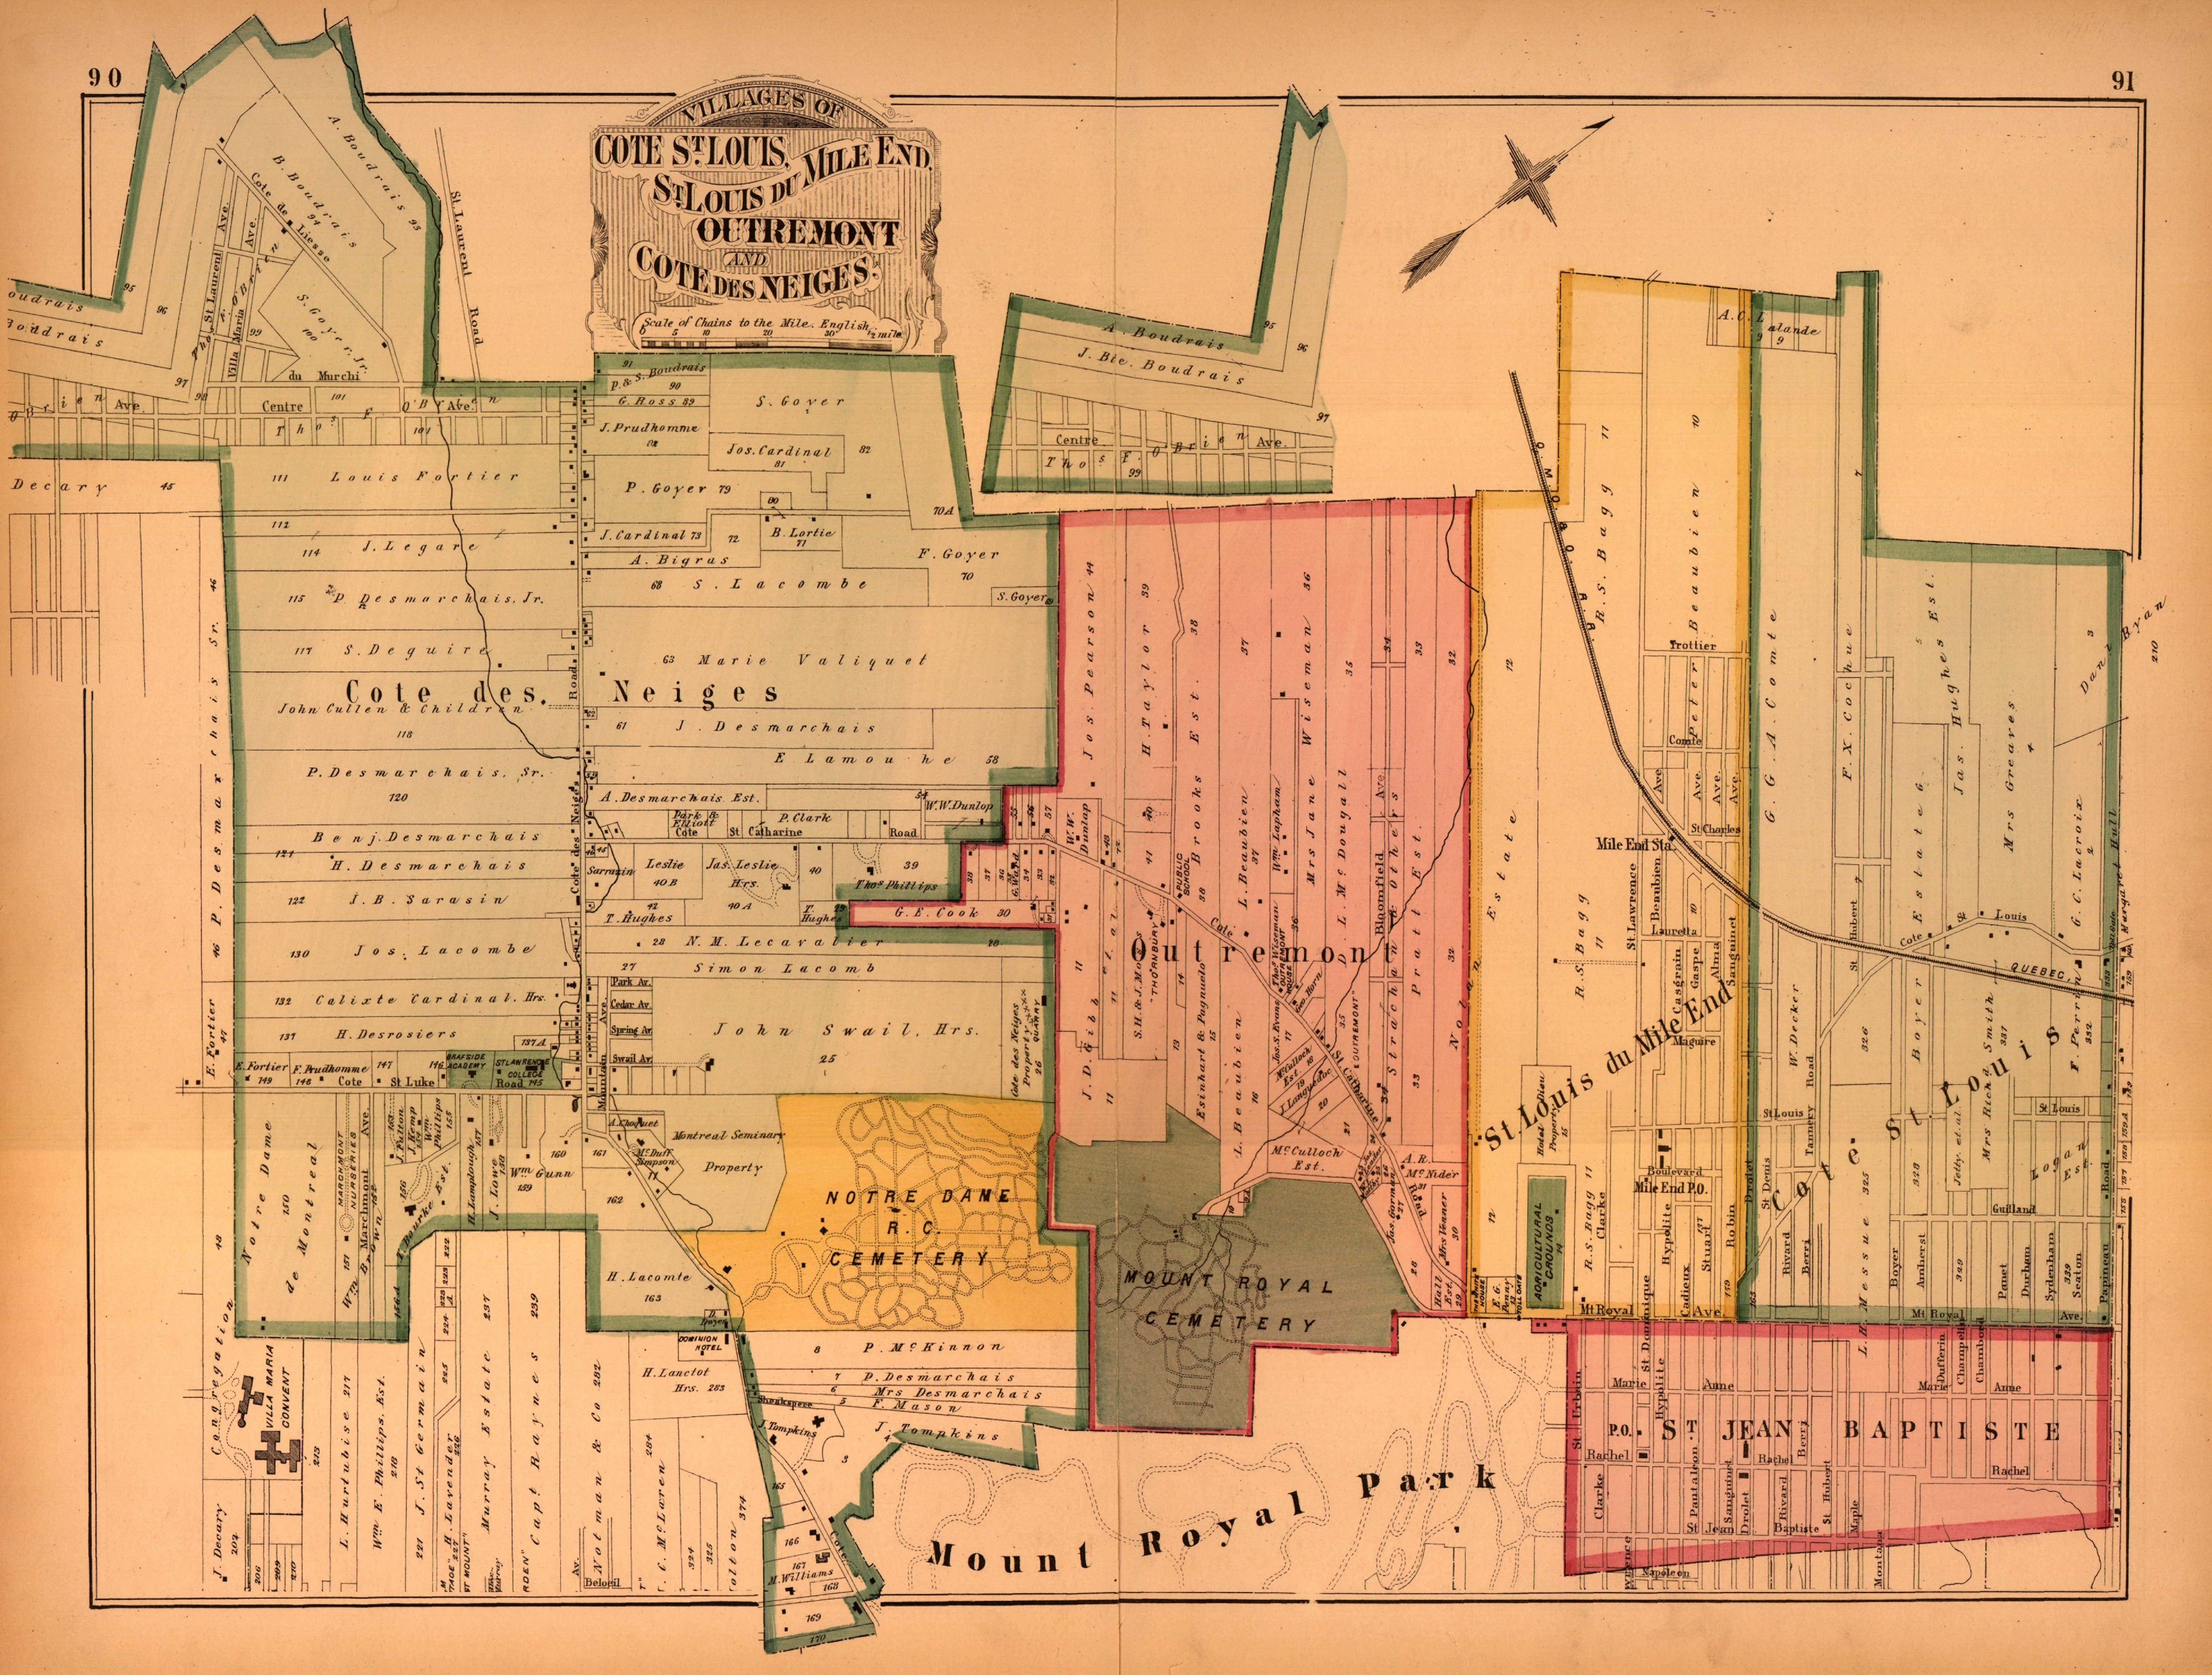 Carte présentant le tracé des rues de différentes municipalités, parmi lesquelles « Saint-Louis du Mile End » apparaît. On peut également y voir les inscriptions « Mile End Station » ainsi que « Mile End P.O. ».